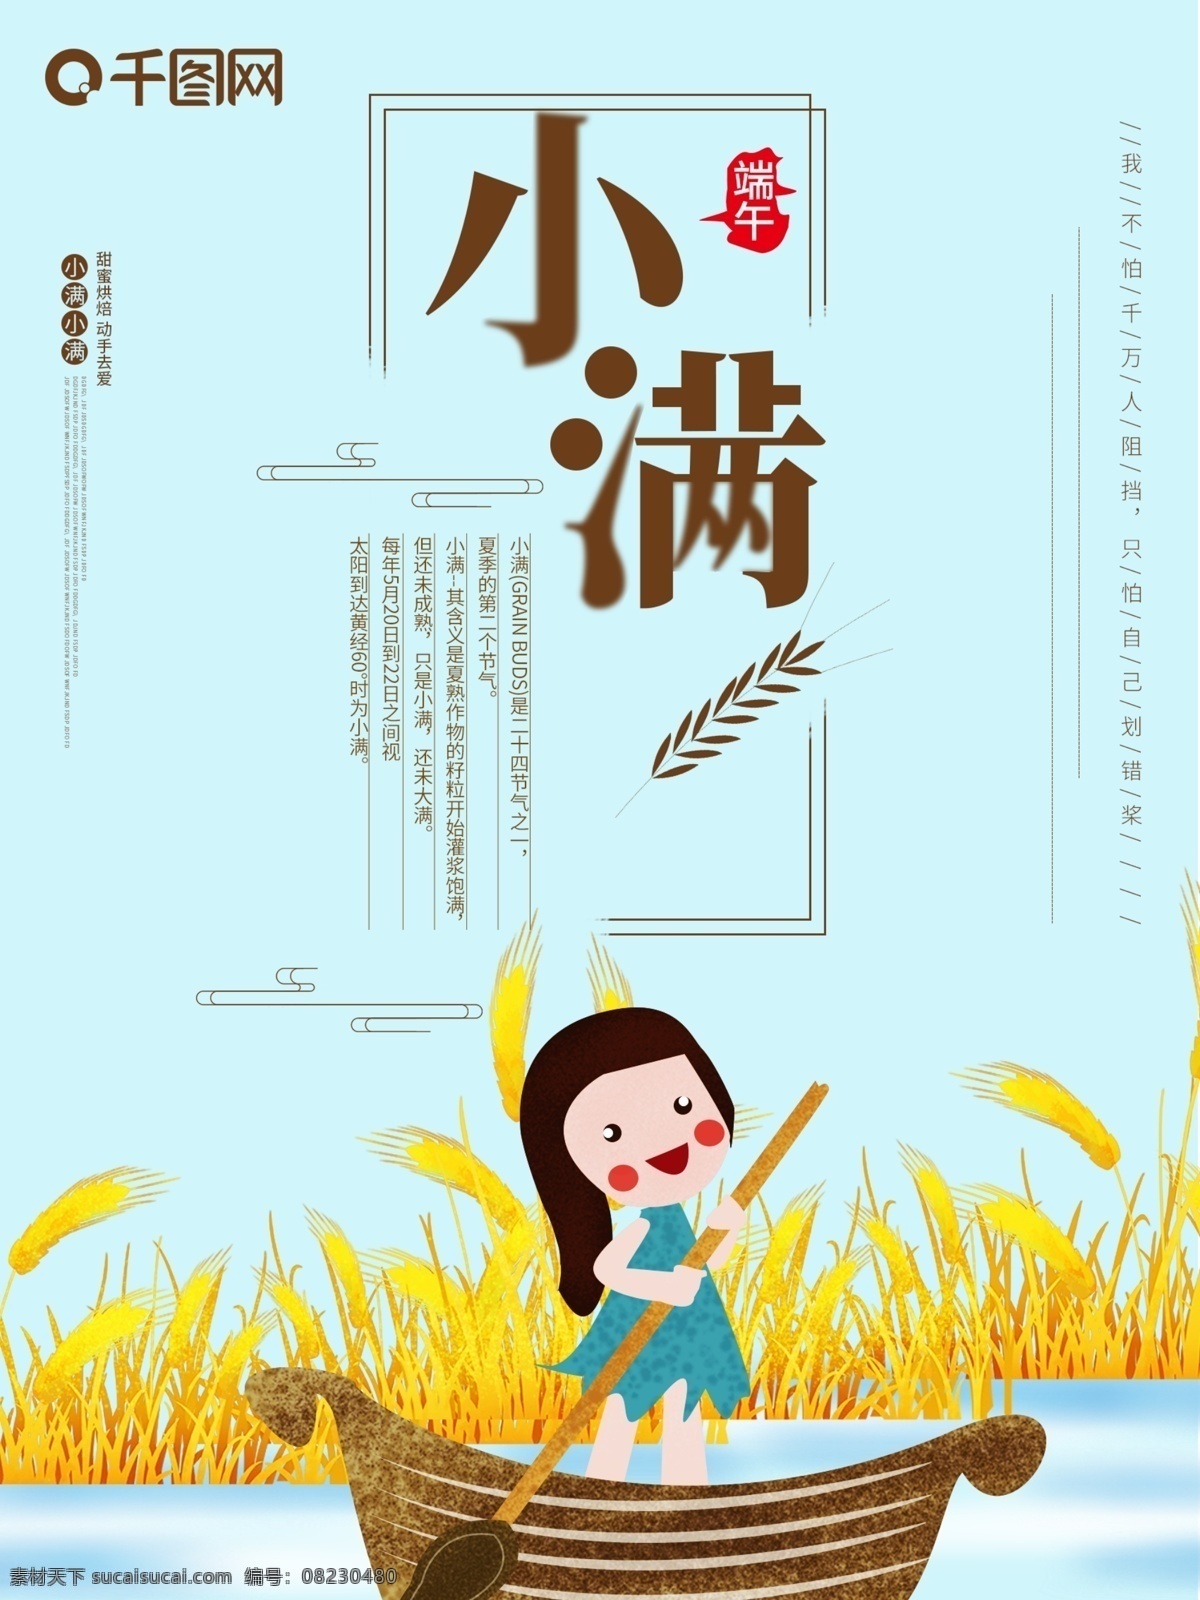 小满 节气 之一 中国 传统节日 小 清新 海报 24节气之一 中国传统 节日 小清新 插画